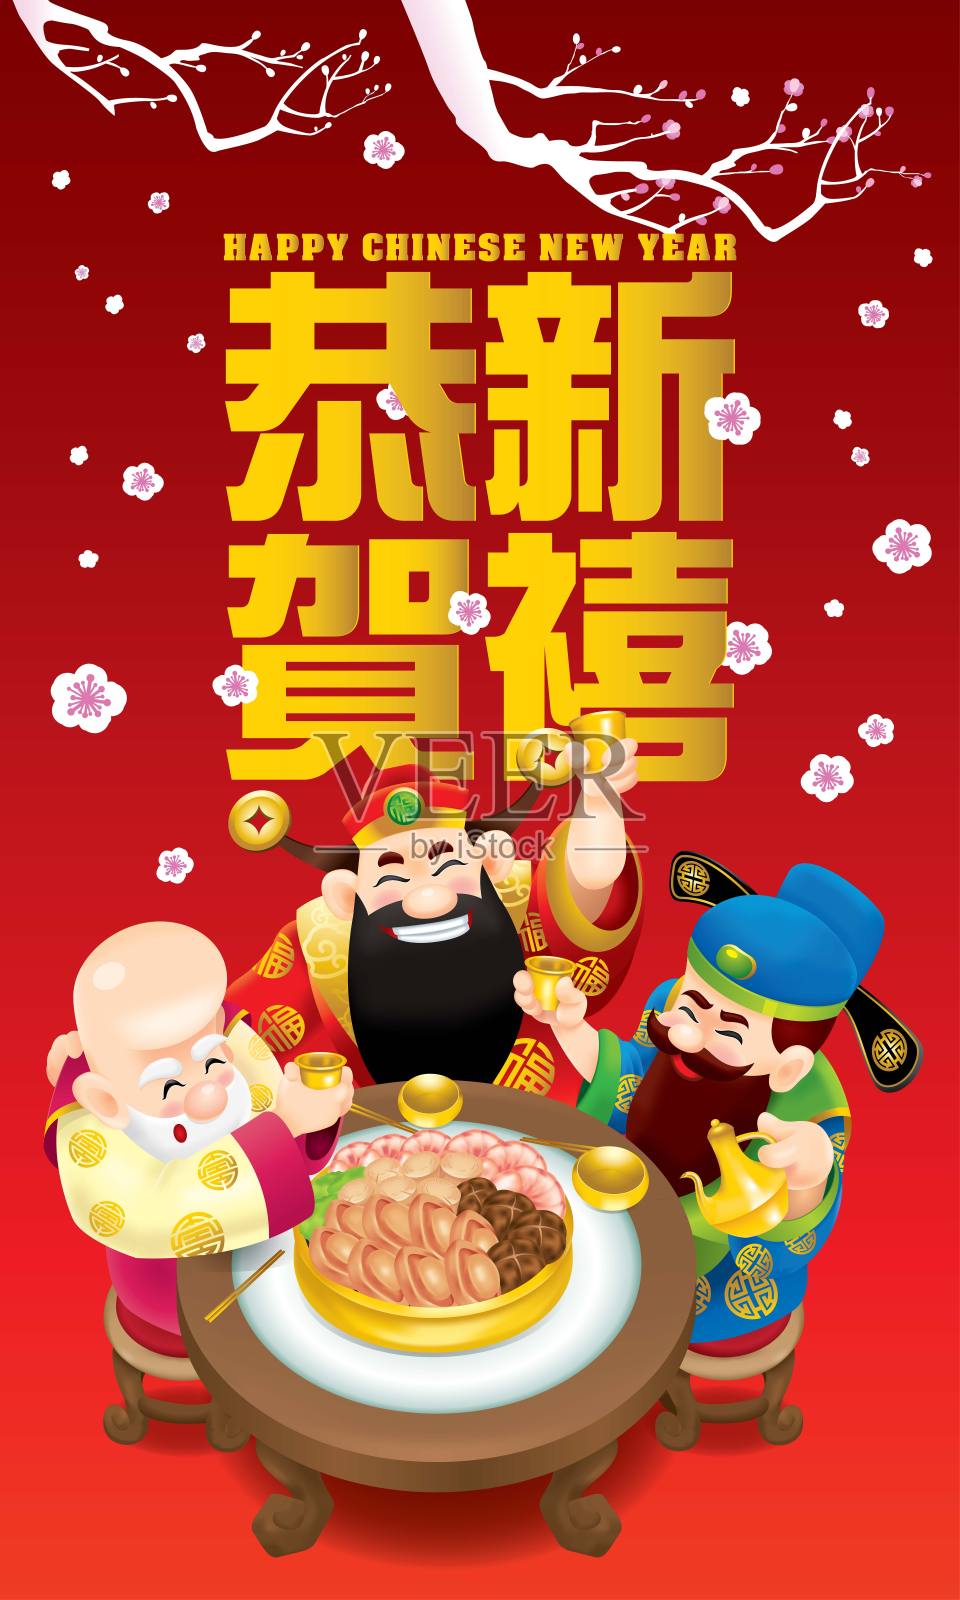 三位可爱的中国神(代表长寿、富有和事业)正在愉快地吃喝。描述:祝大家春节快乐。设计模板素材